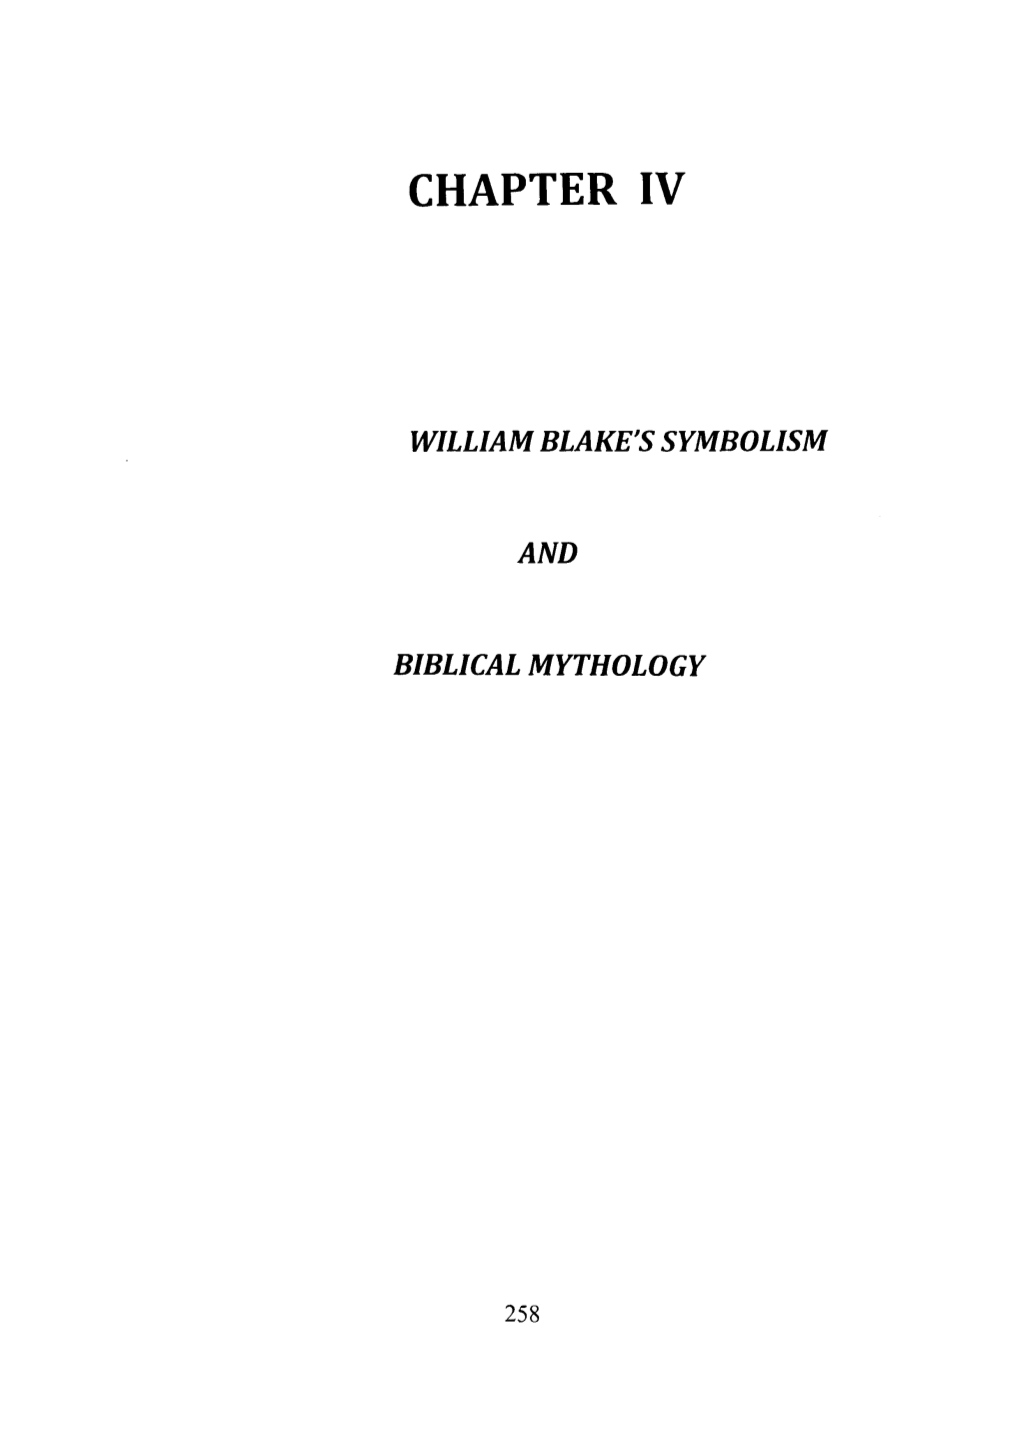 Chapter Iv William Blake's Symbolism and Biblical Mythology